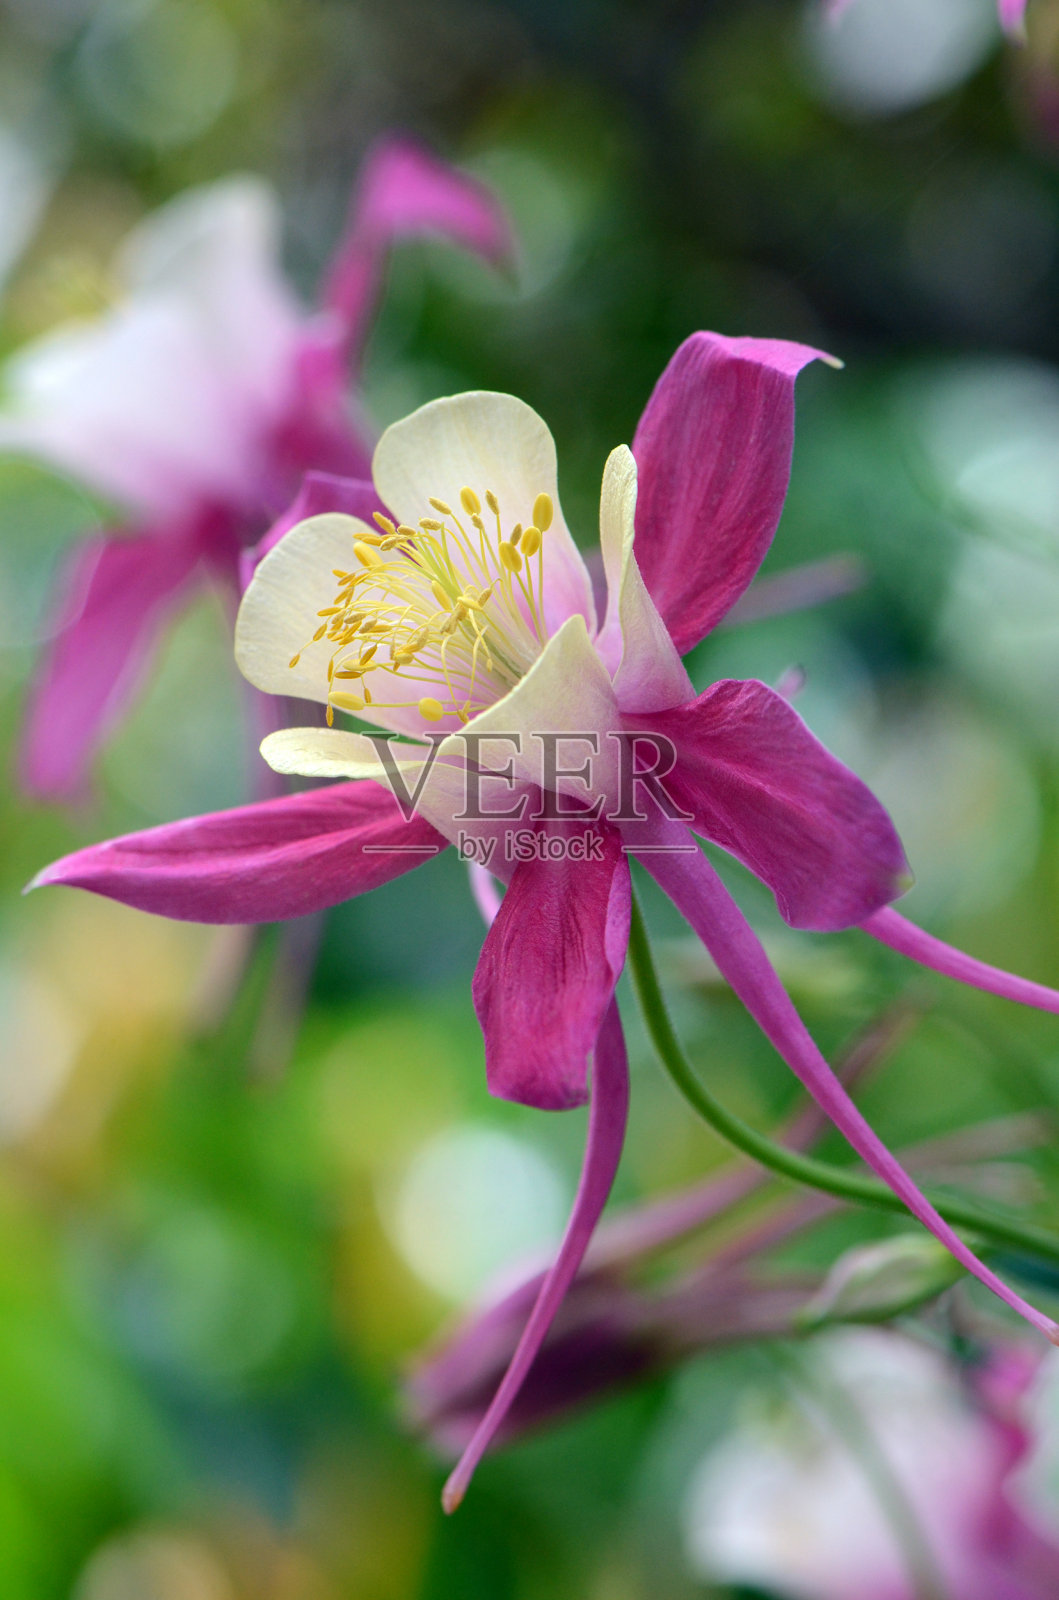 毛茛科毛茛科的粉红色沉香花。被称为哥伦拜恩和奶奶的邦内特照片摄影图片